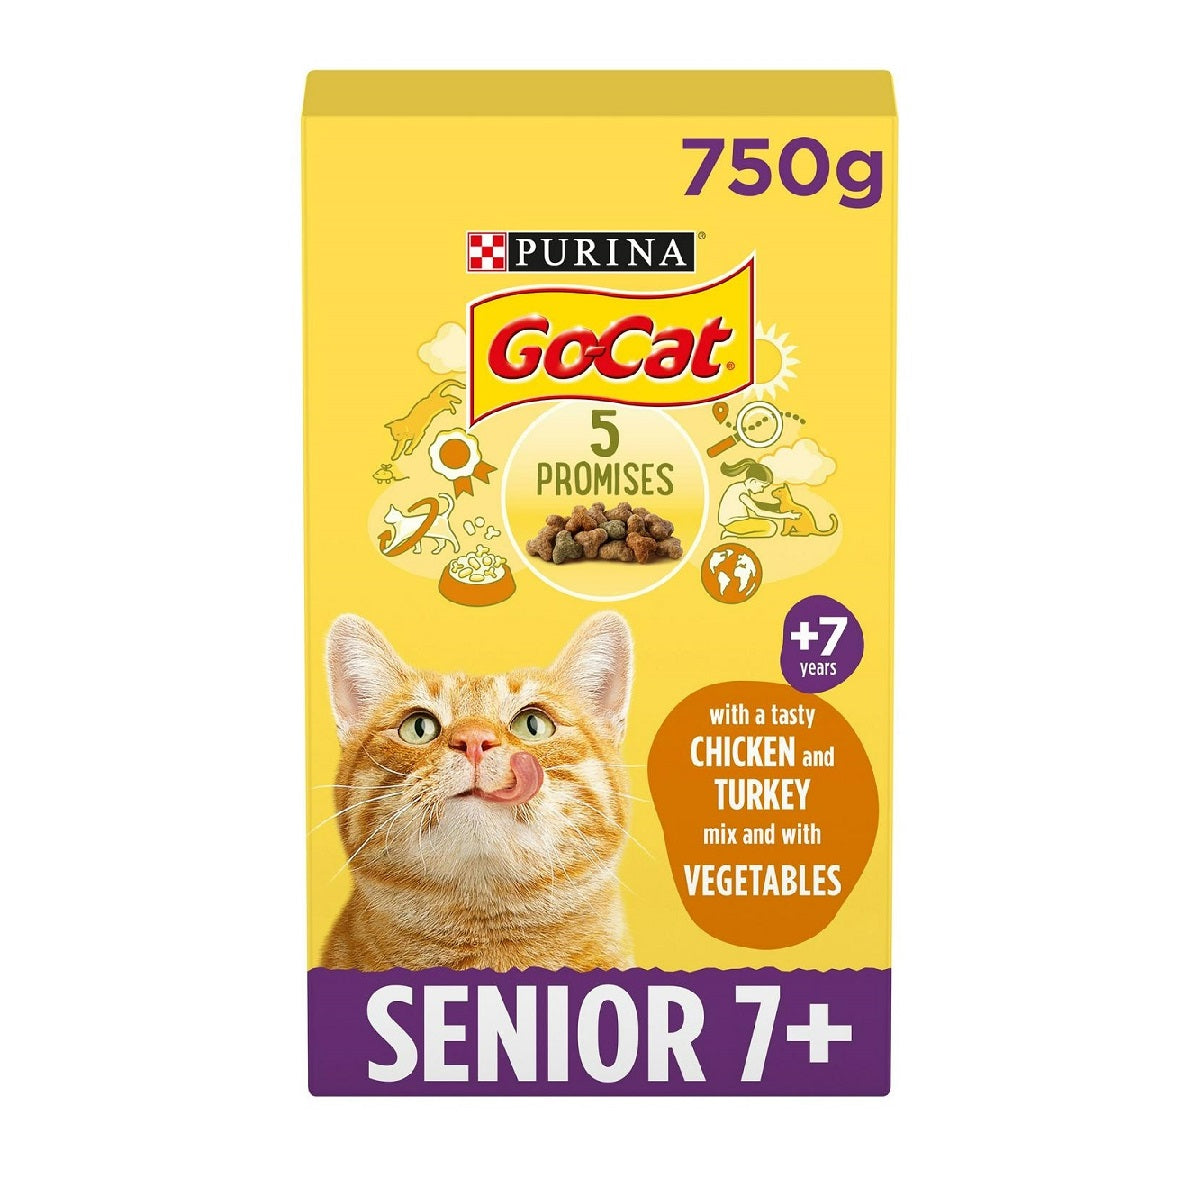 Go-Cat - Senior 7+